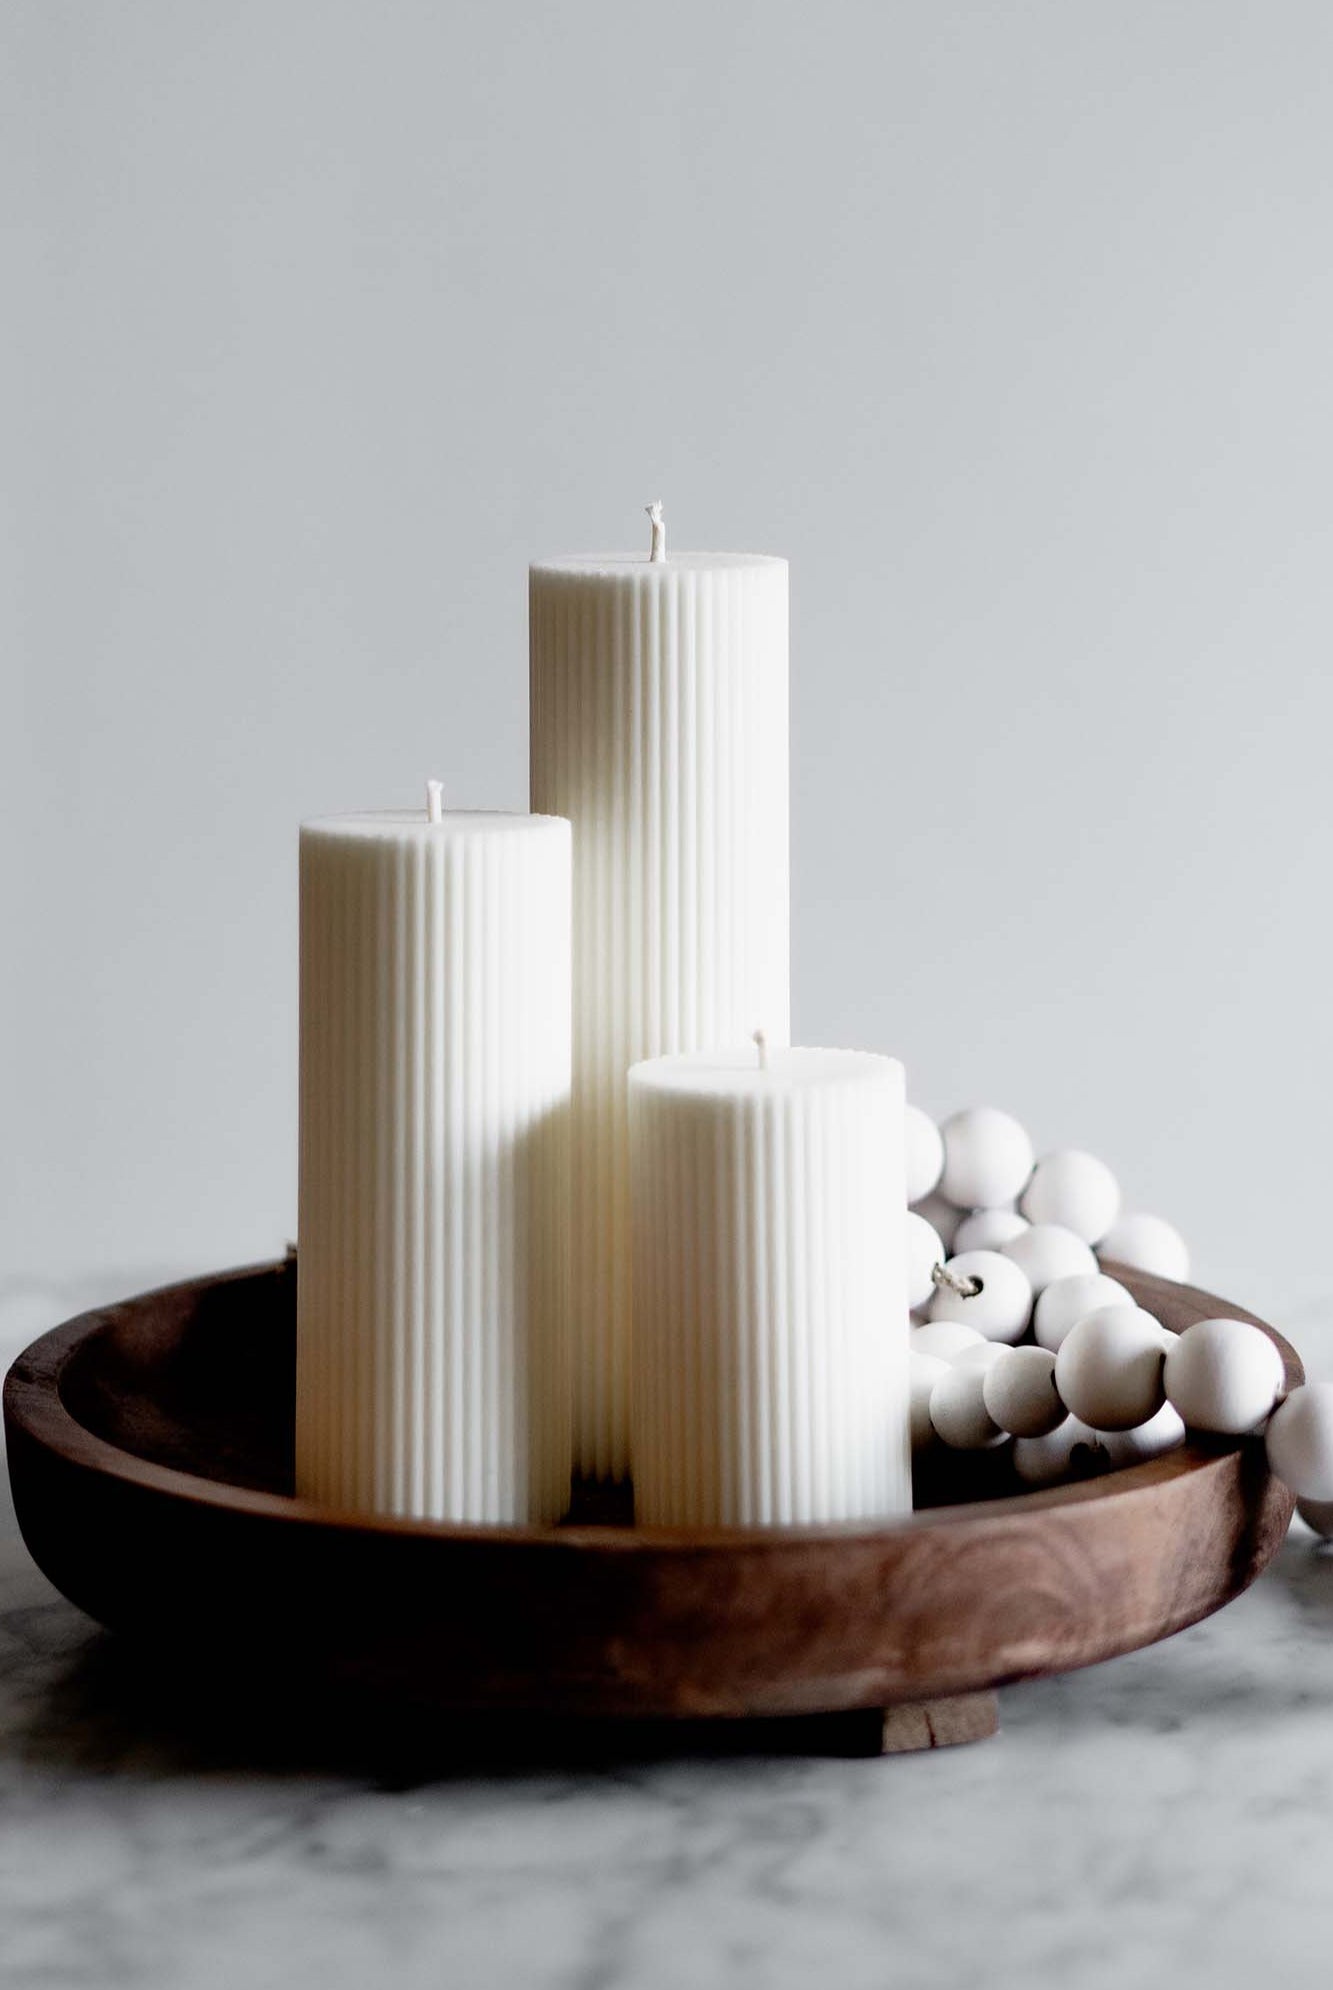 Designer Moulds – Myka Candles & Moulds